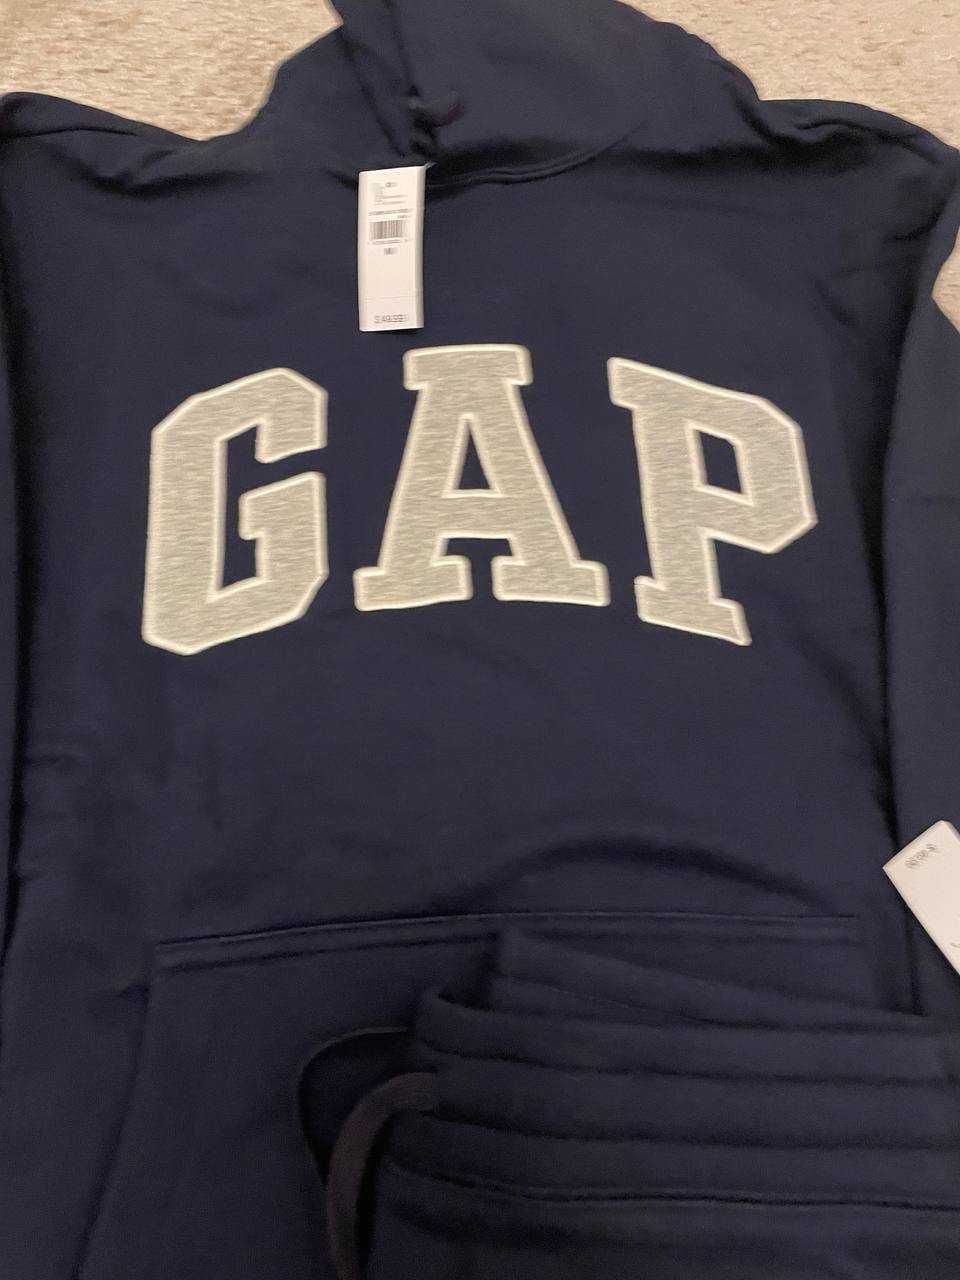 Gap спортивний костюм чоловічий новий оригінал